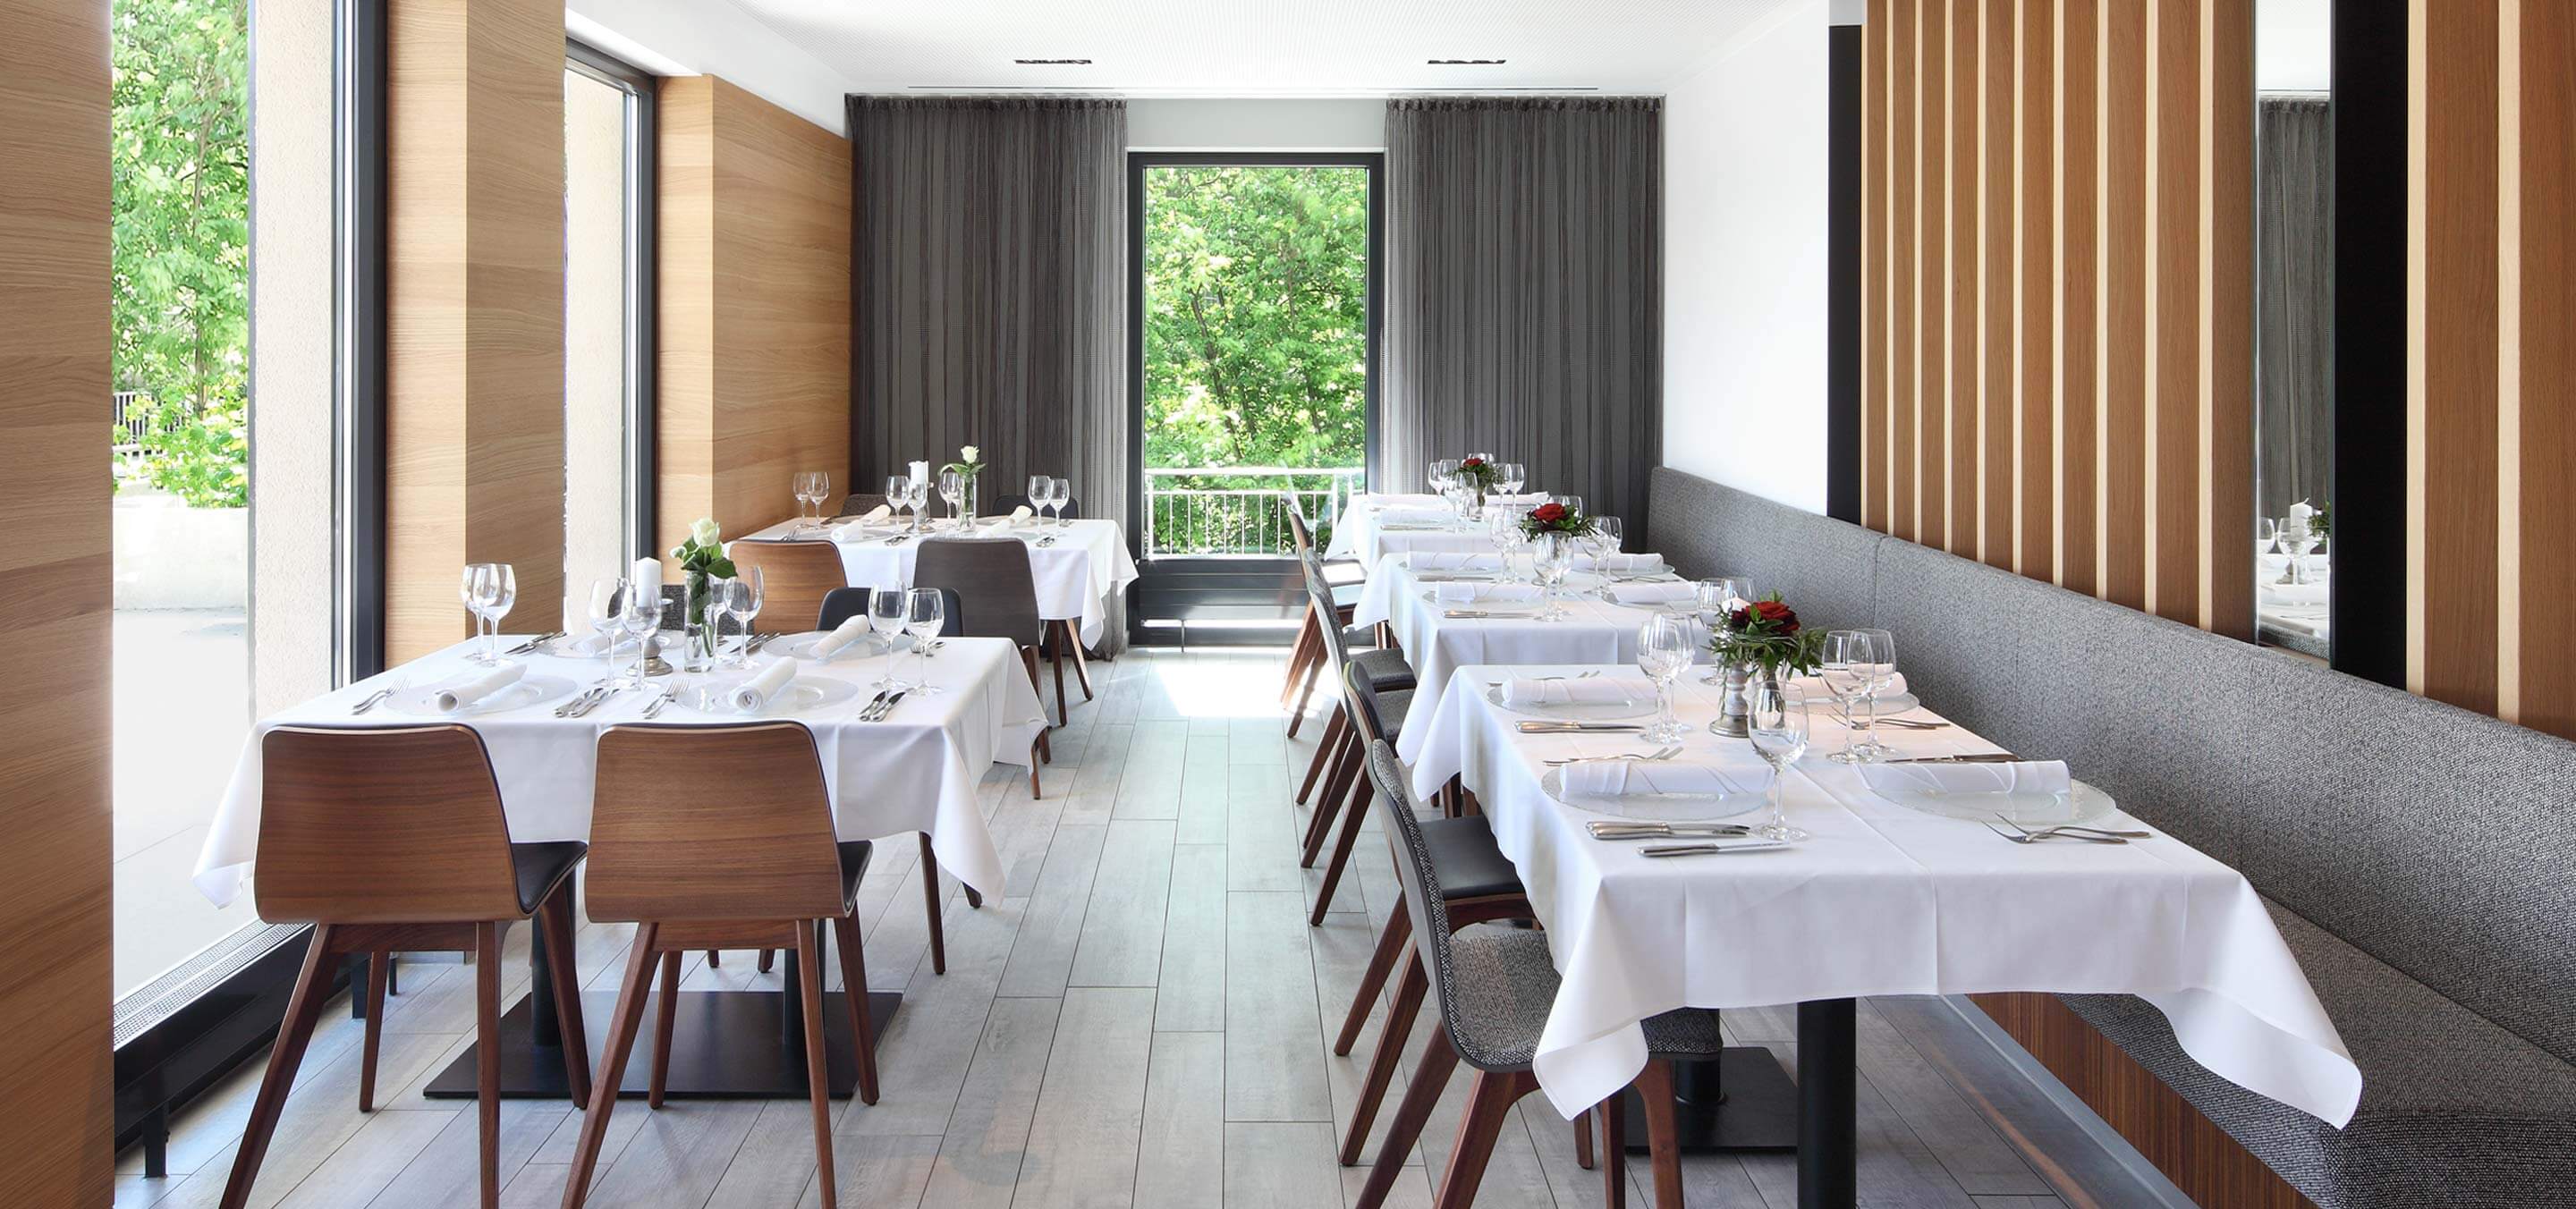 Restaurant – Hotel Hiller in Abstatt